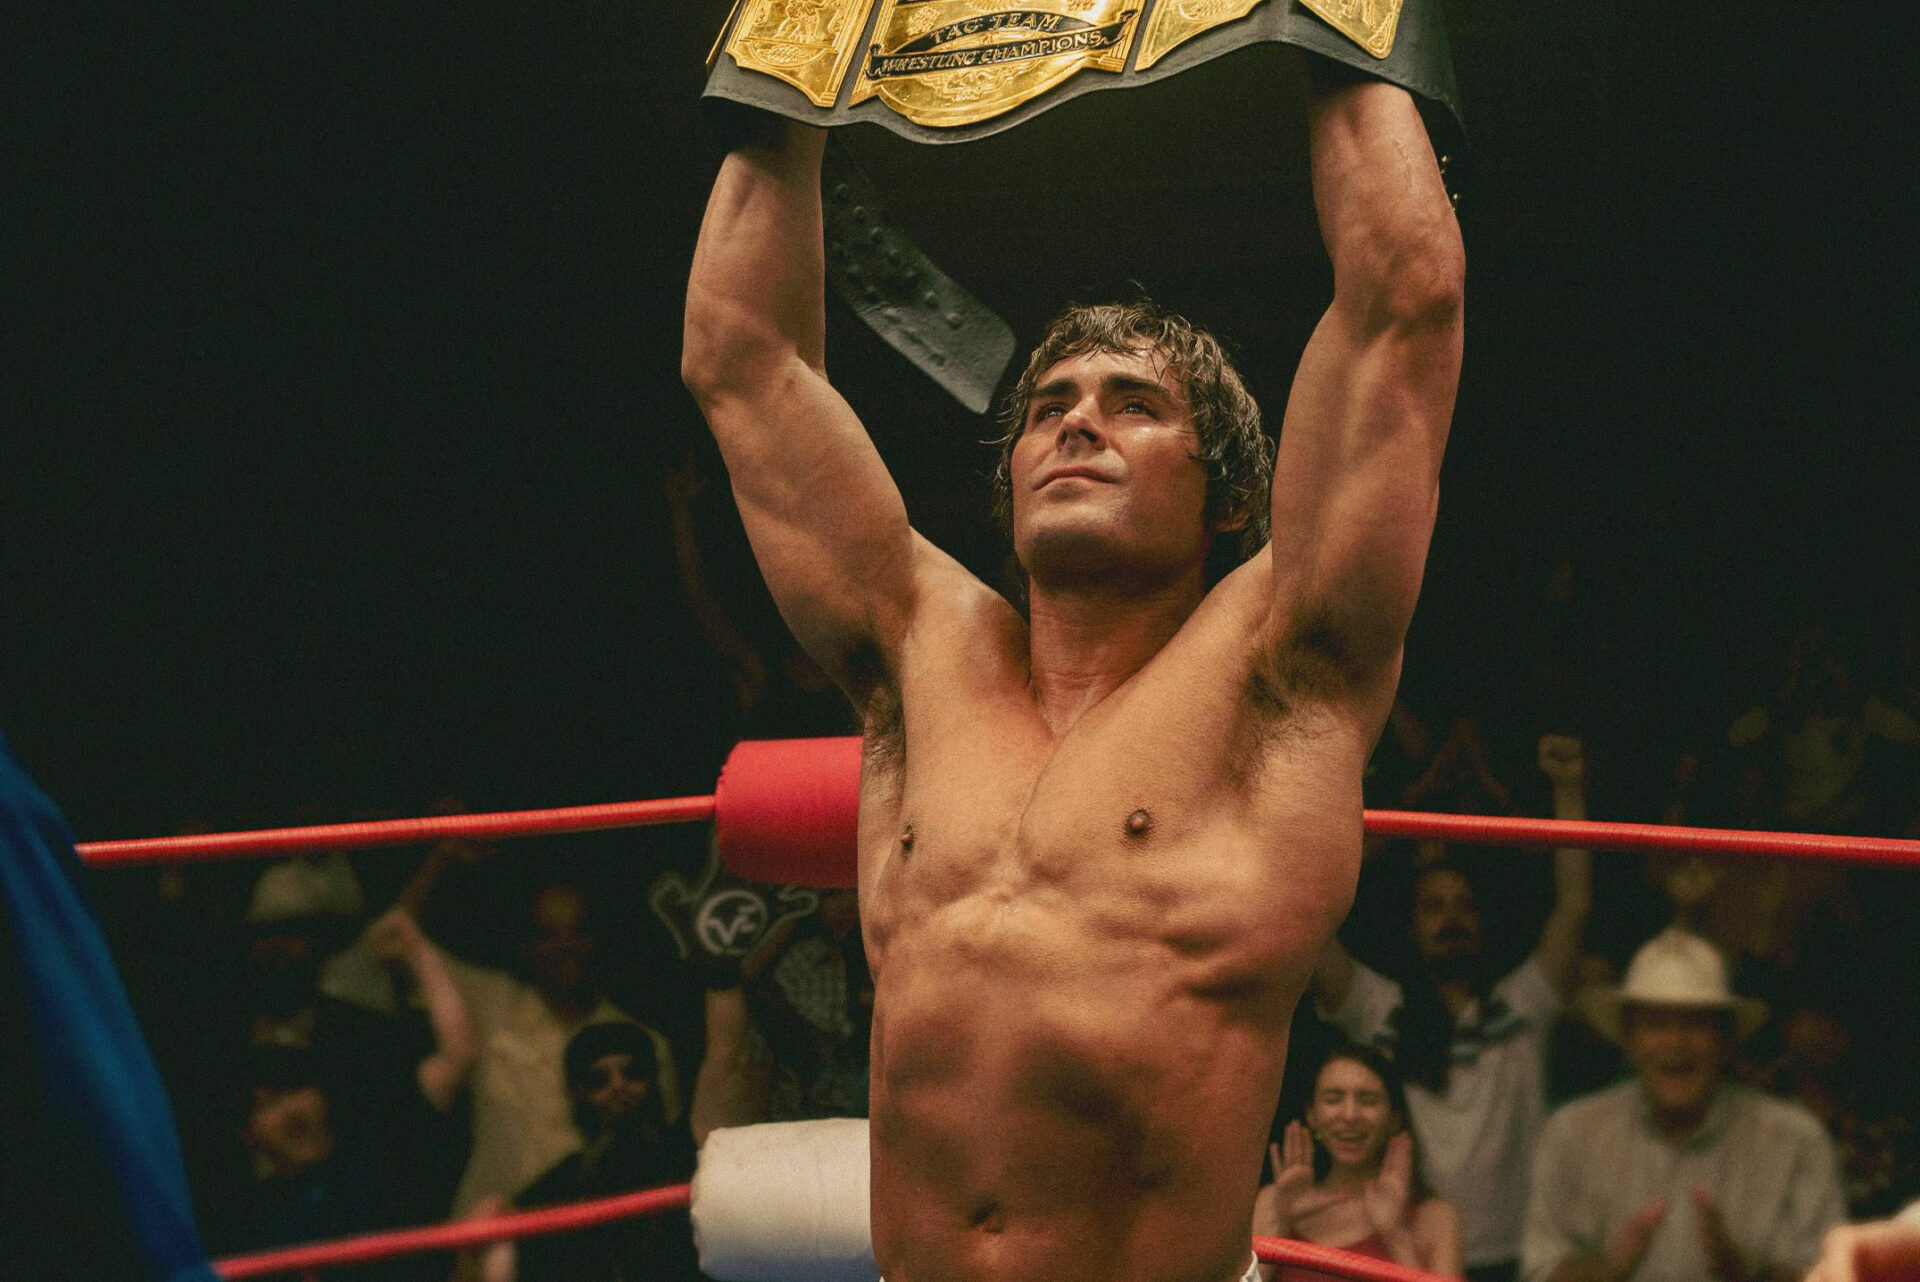 Das Bild zeigt einen jungen Mann, der den Oberkörper frei hat, in einem Boxring steht und einen goldenen Gürtel in die Höhe hält. Hinter ihm sieht man ein jubelndes Publikum